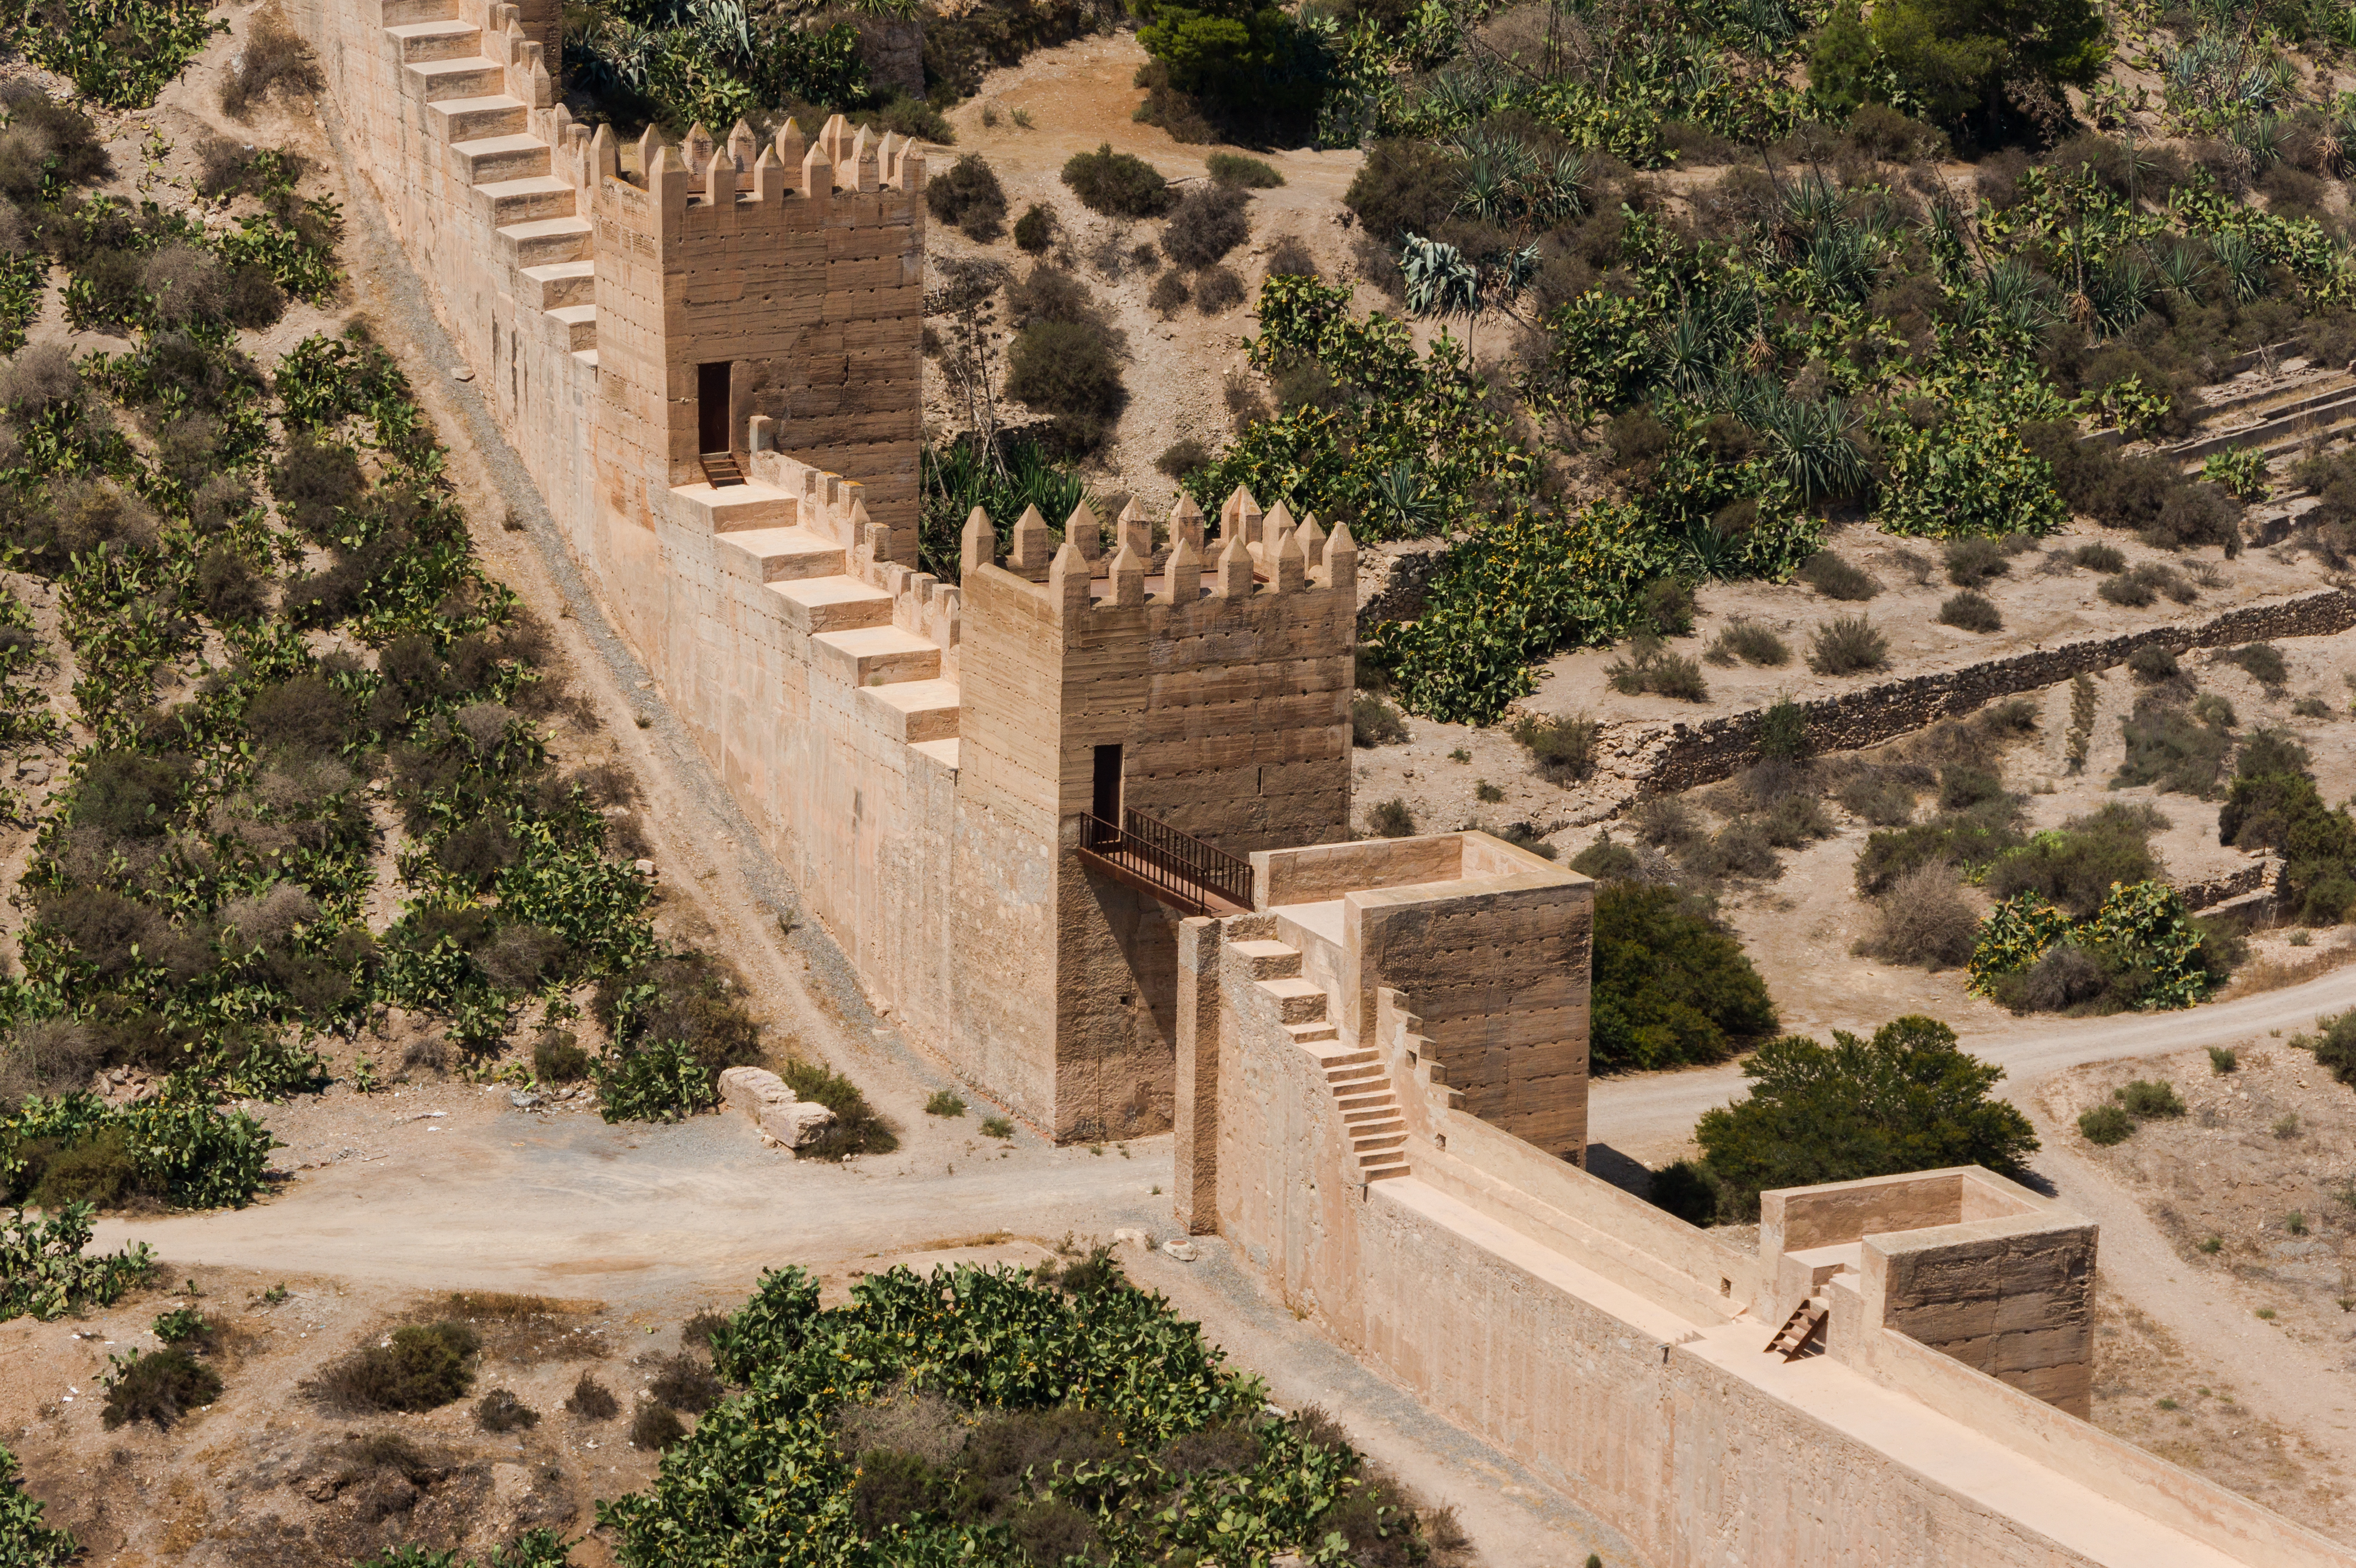 Gate city wall, Almeria, Spain